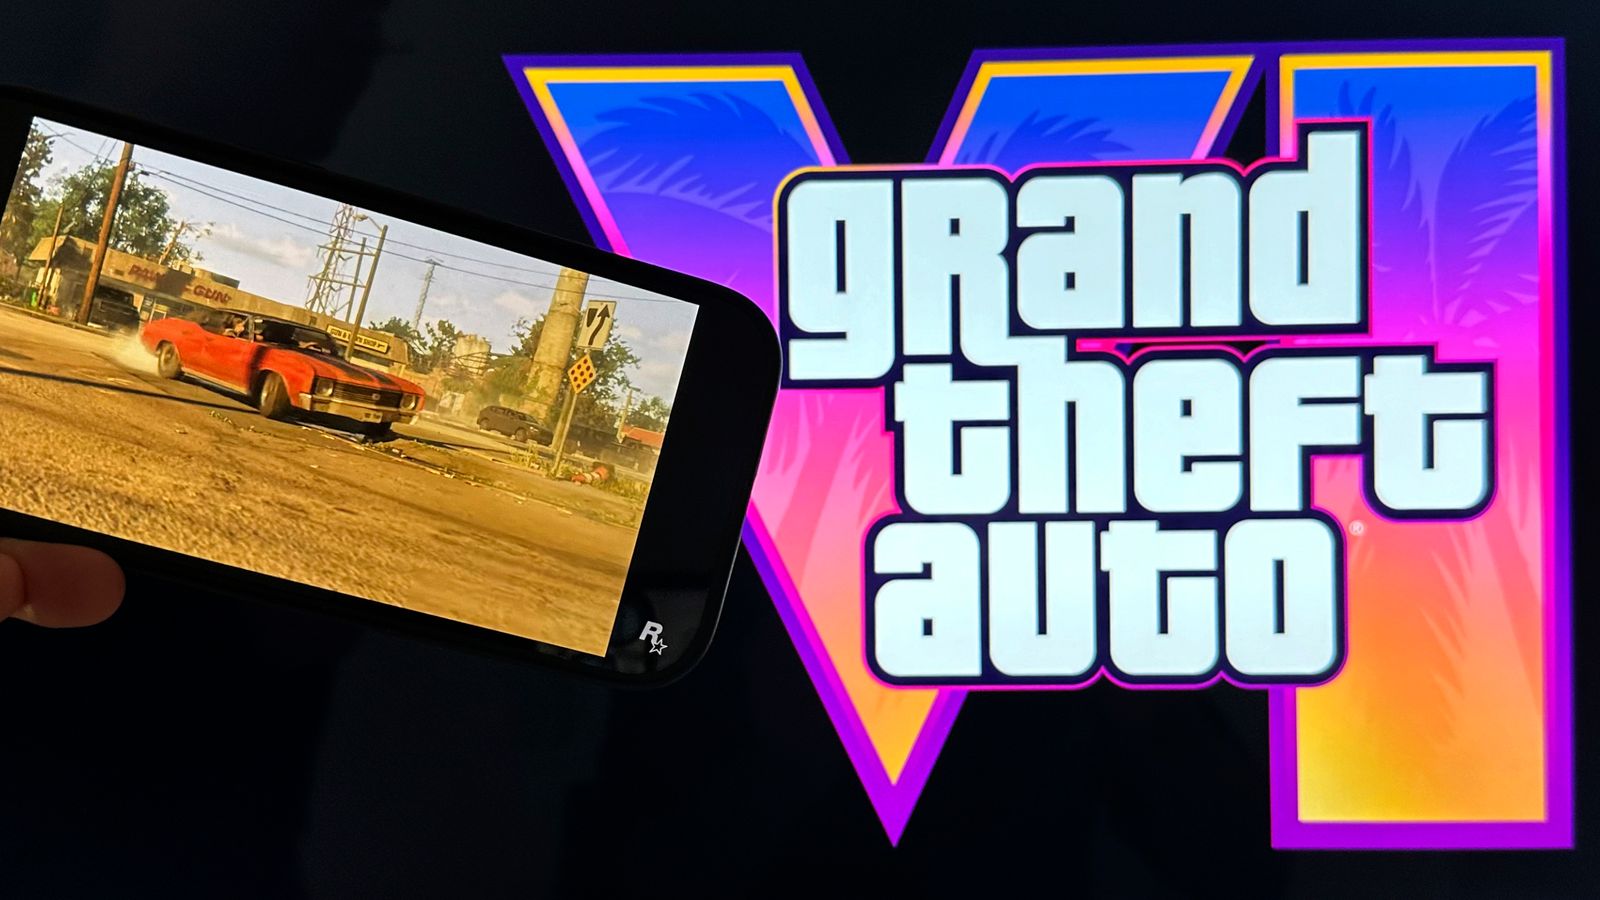 Arion Kurtaj: Тийнейджър, осъден за хакване на Grand Theft Auto VI